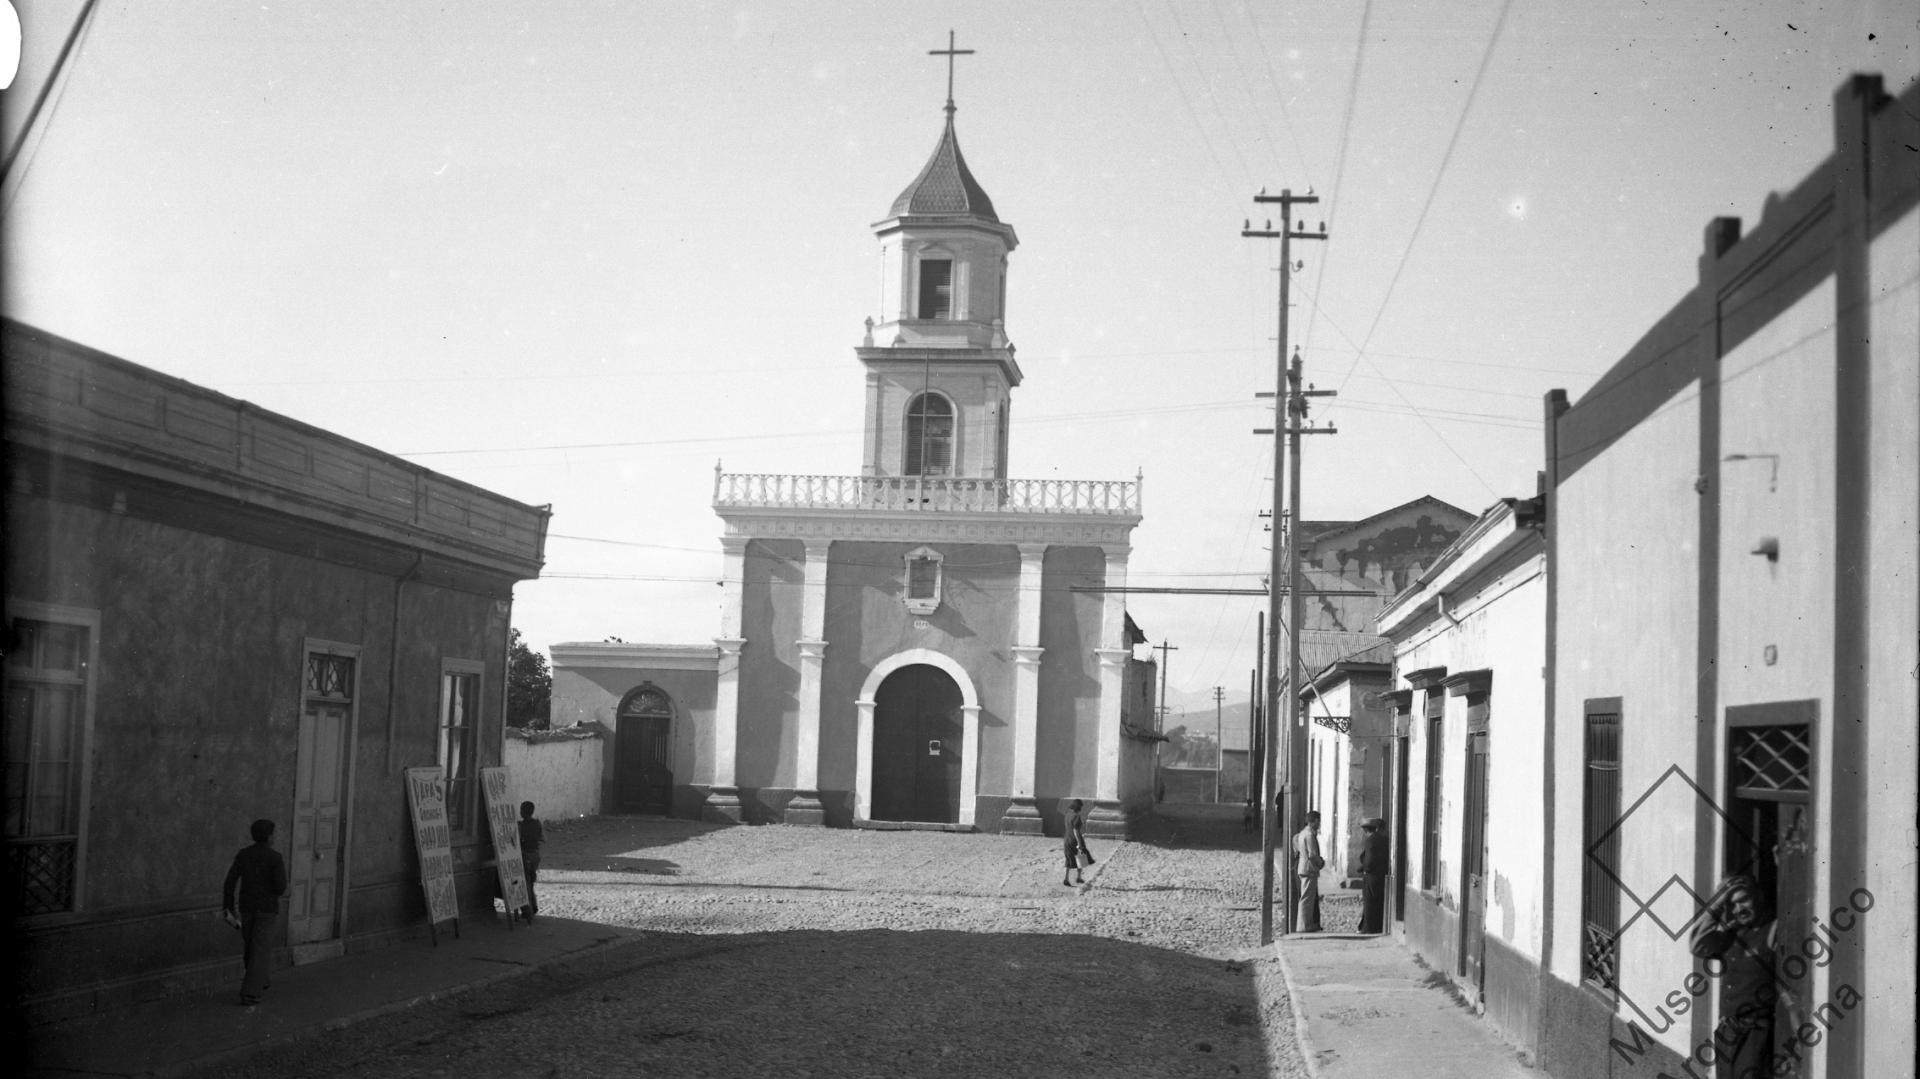 Iglesia Santa Inés. Vista desde calle Matta hacia el norte, frontis iglesia